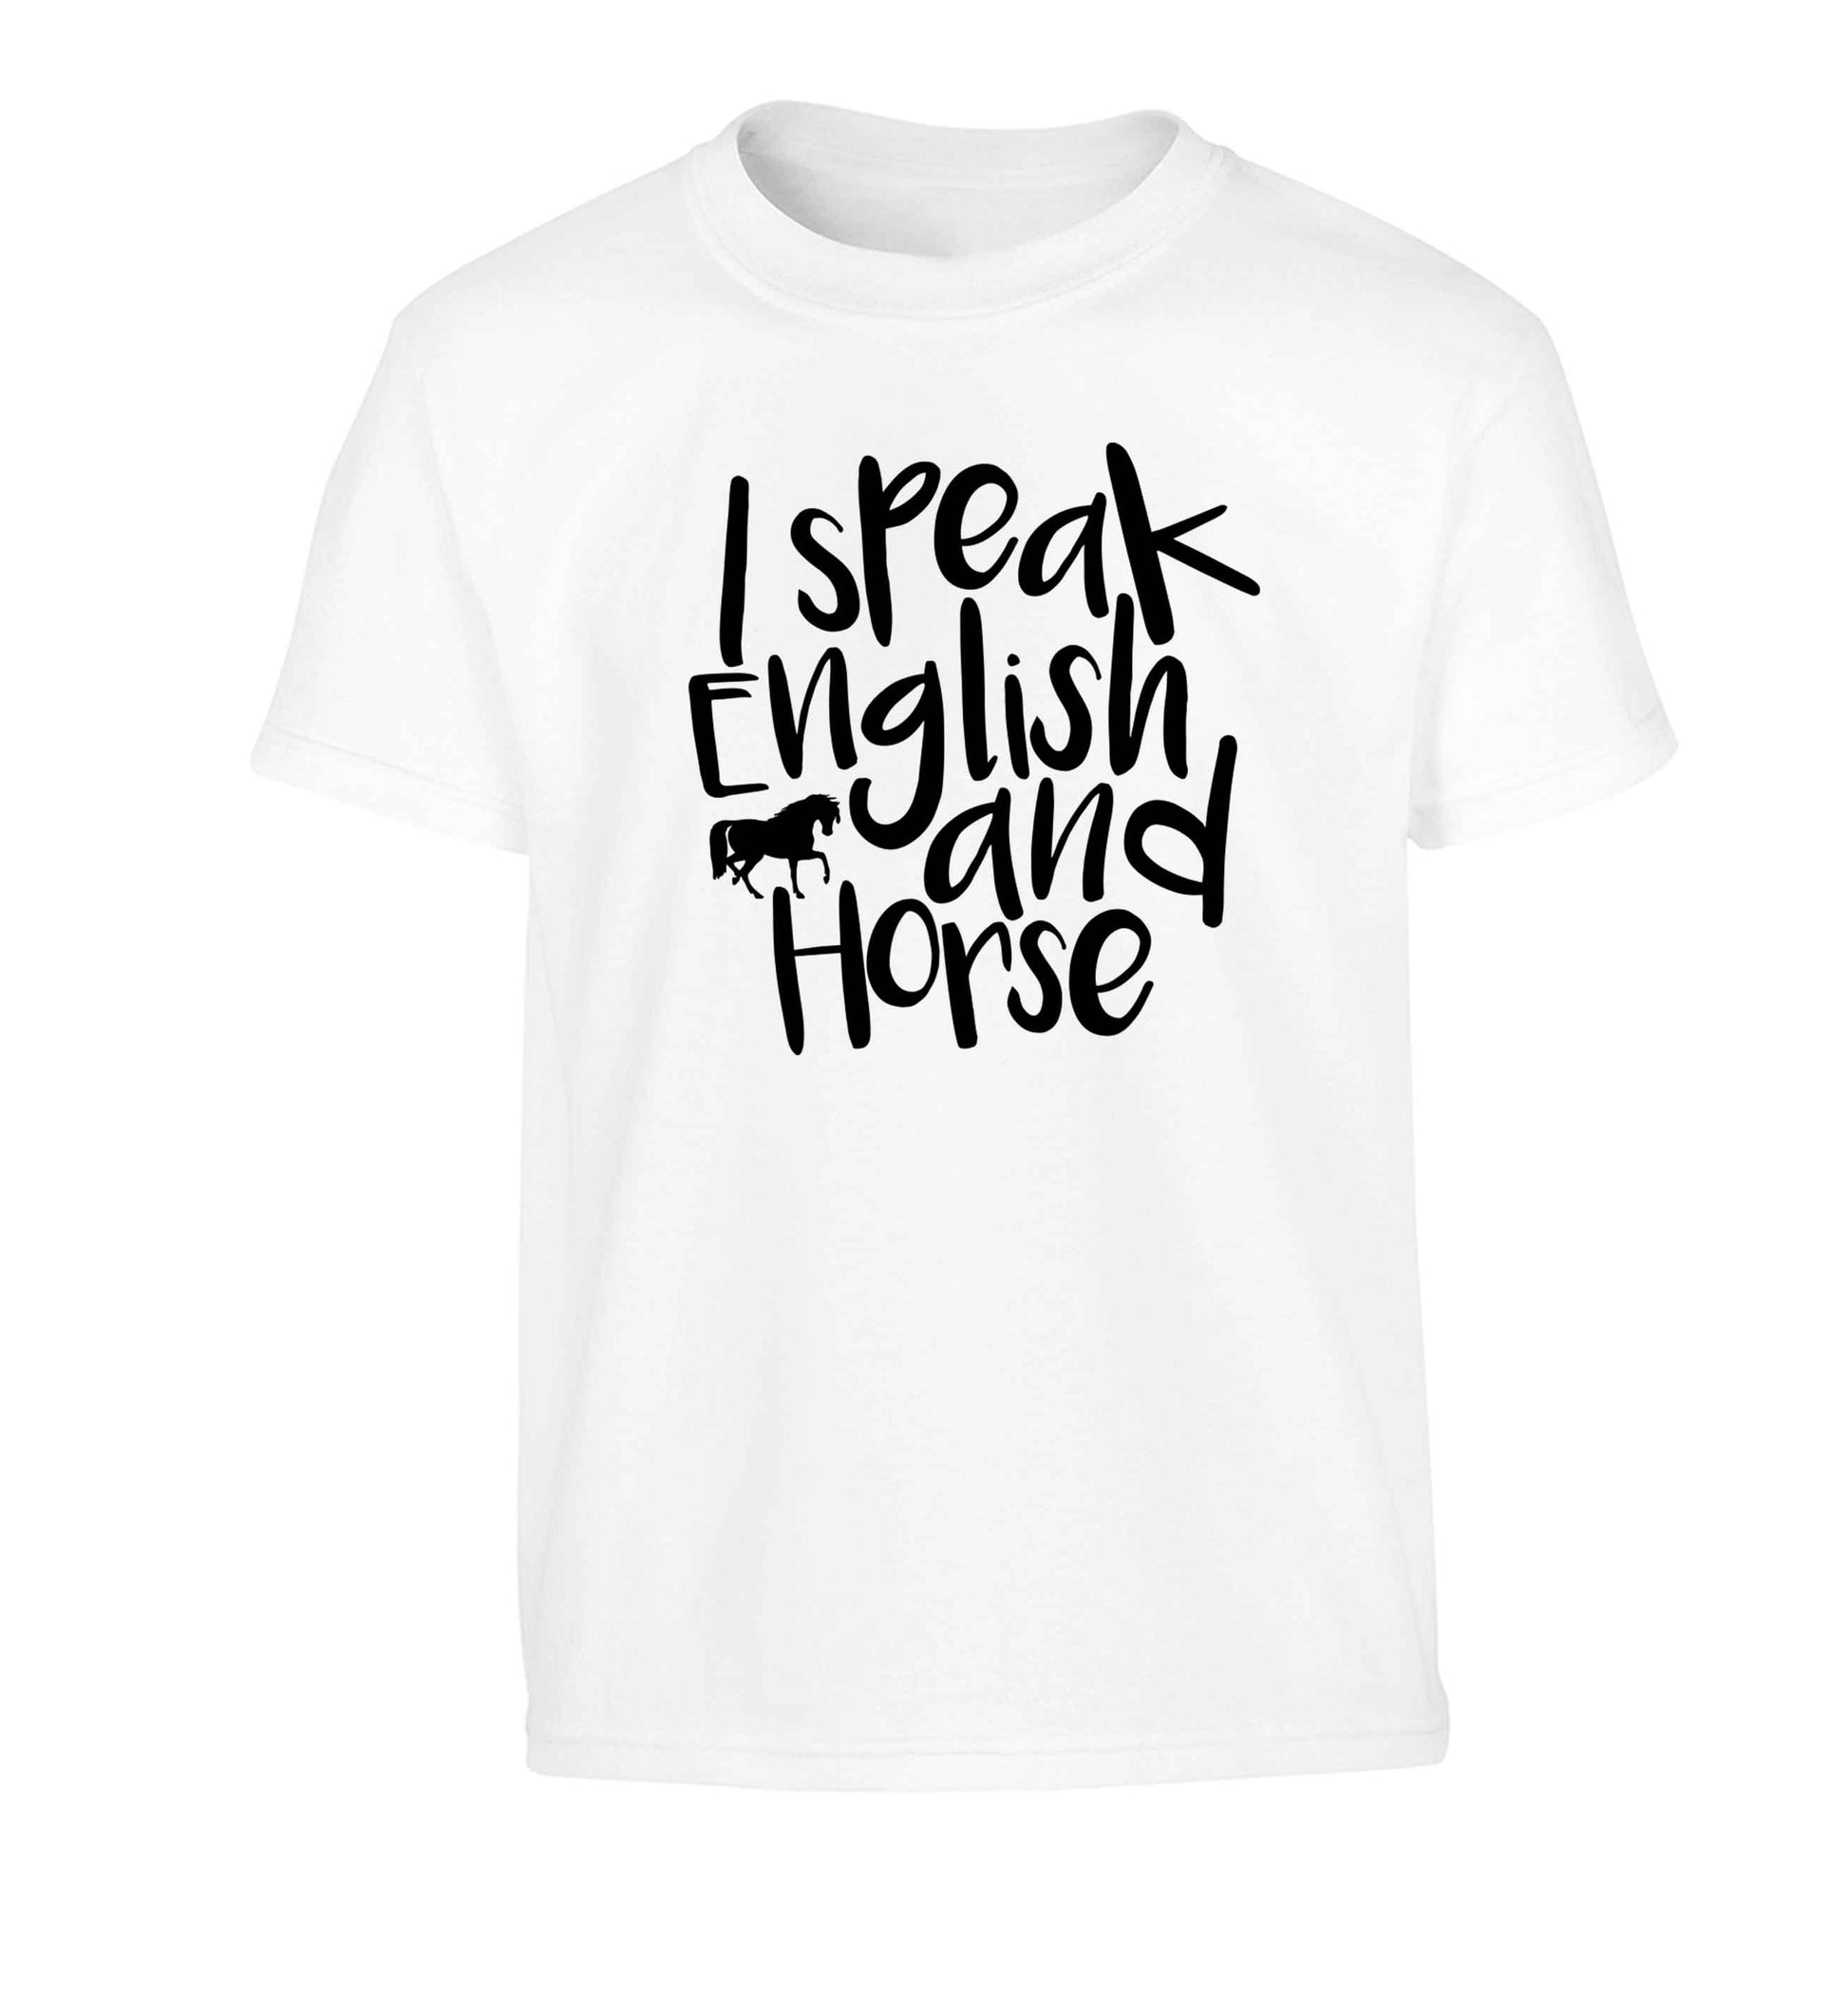 I speak English and horse Children's white Tshirt 12-13 Years